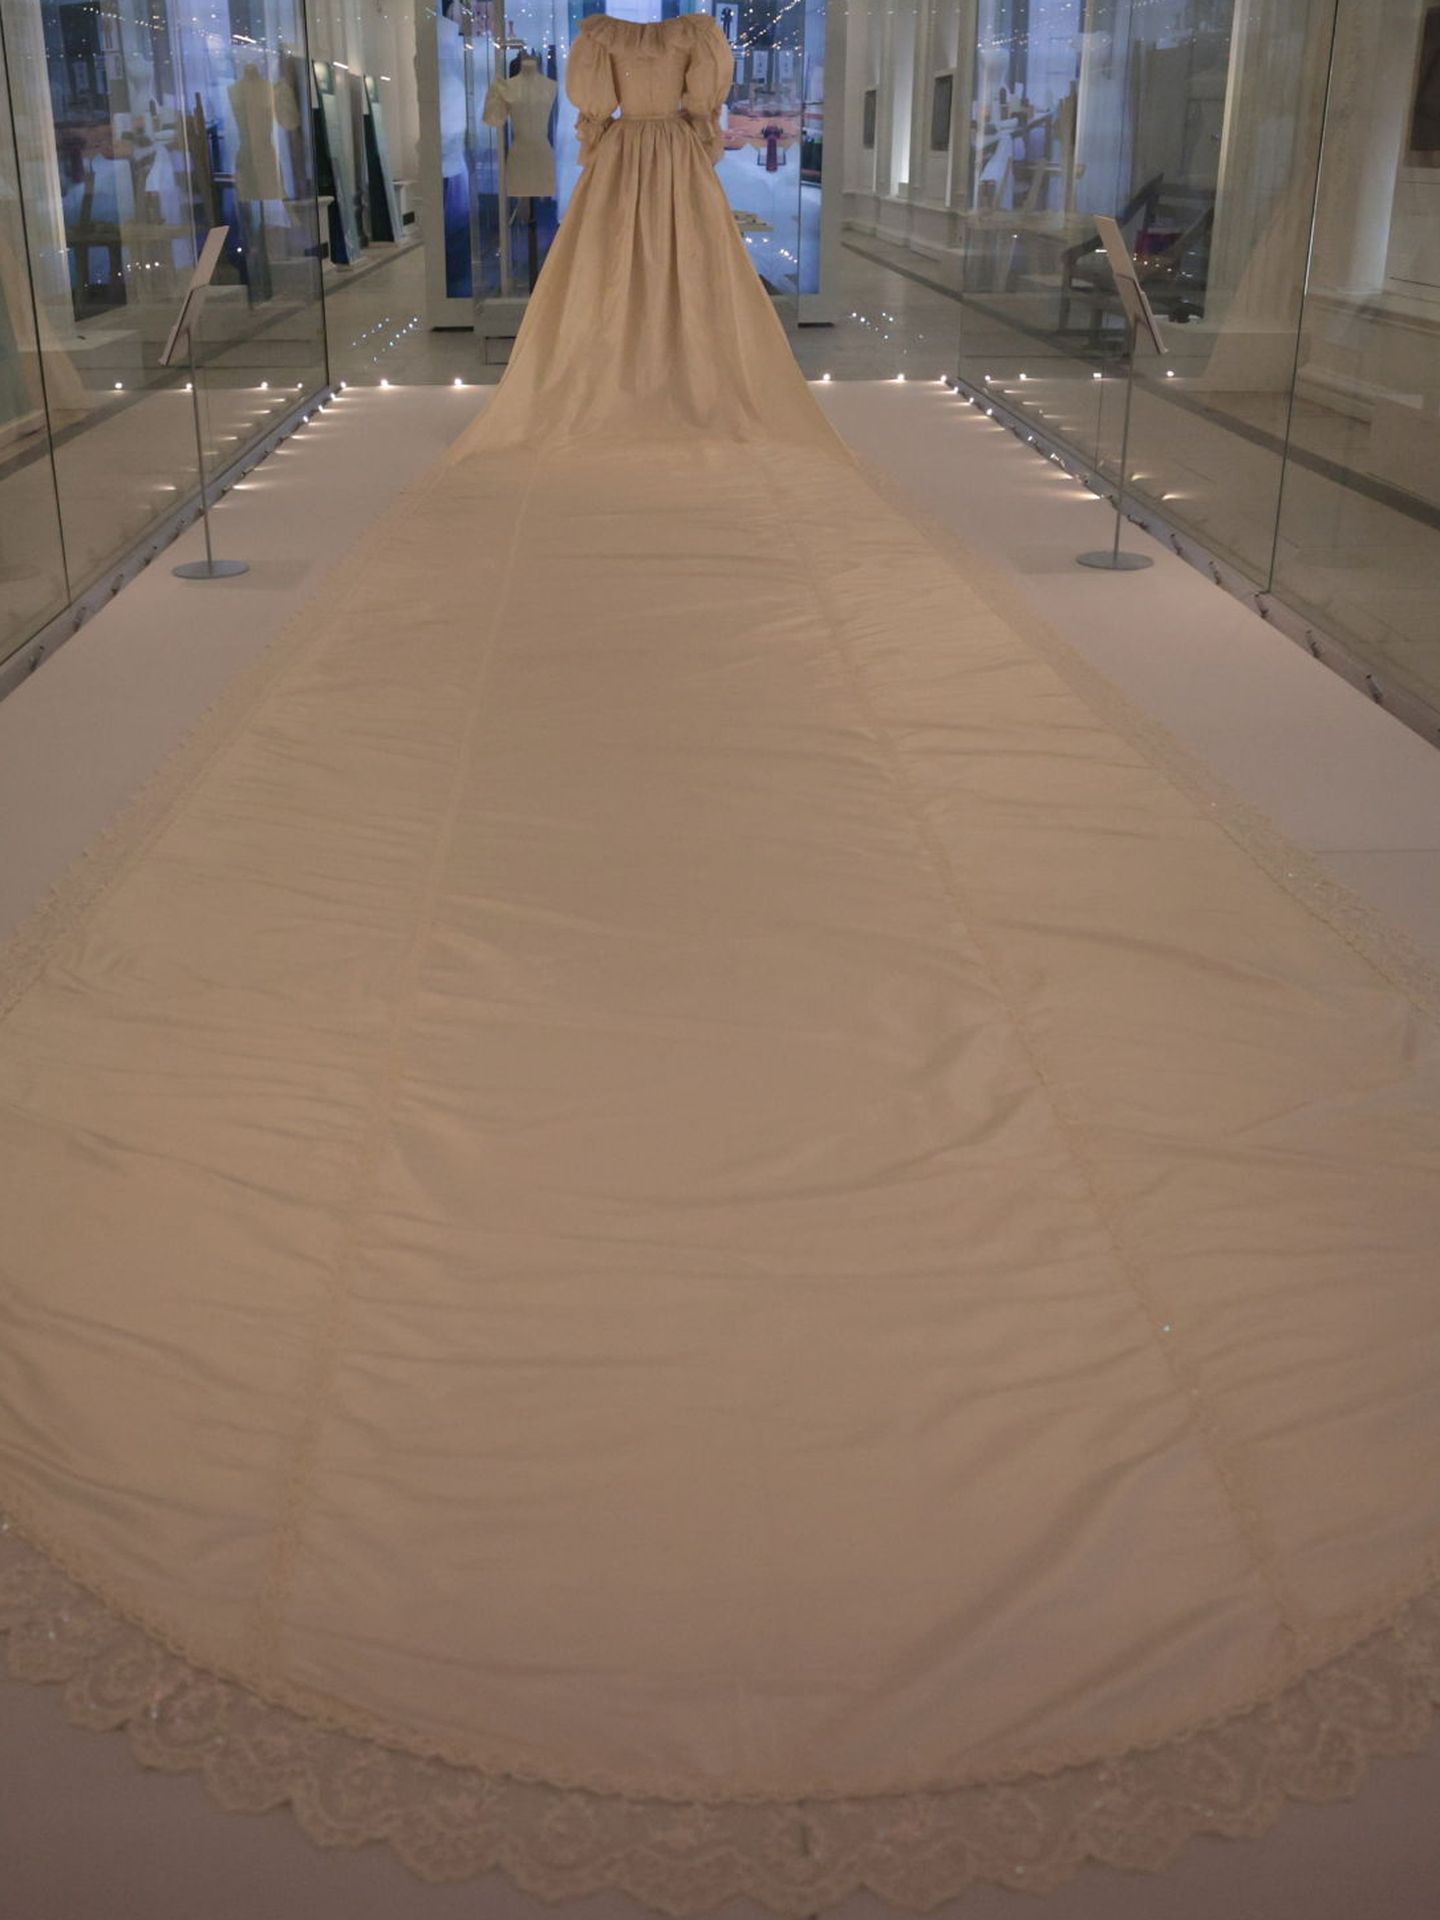 El largo velo del vestido de novia. (Reuters/Hannah McKay)